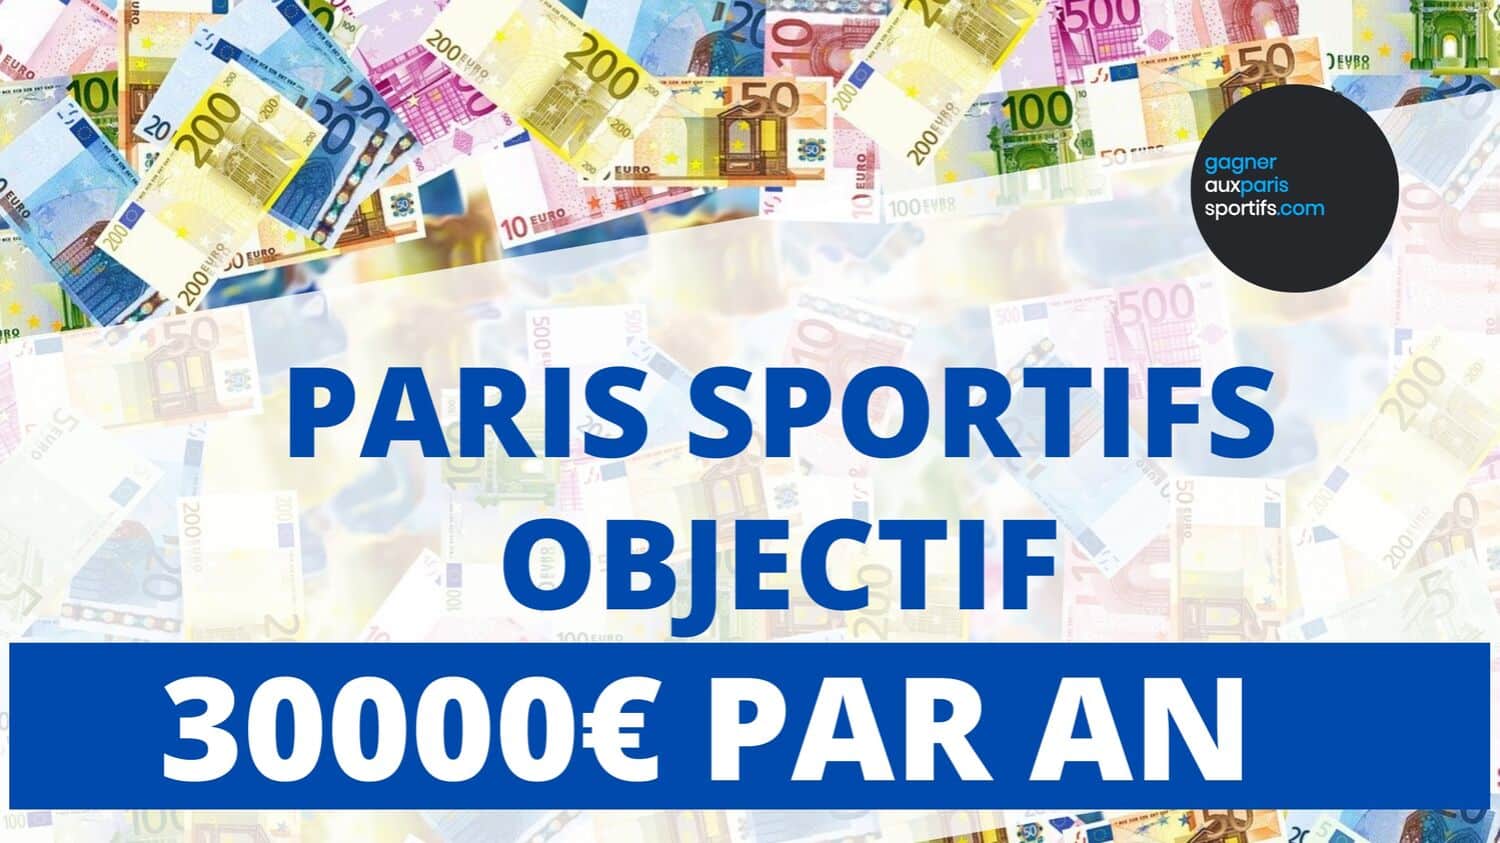 Paris sportifs _ Objectif 30000€ de bénéfice par an_jpg (1)